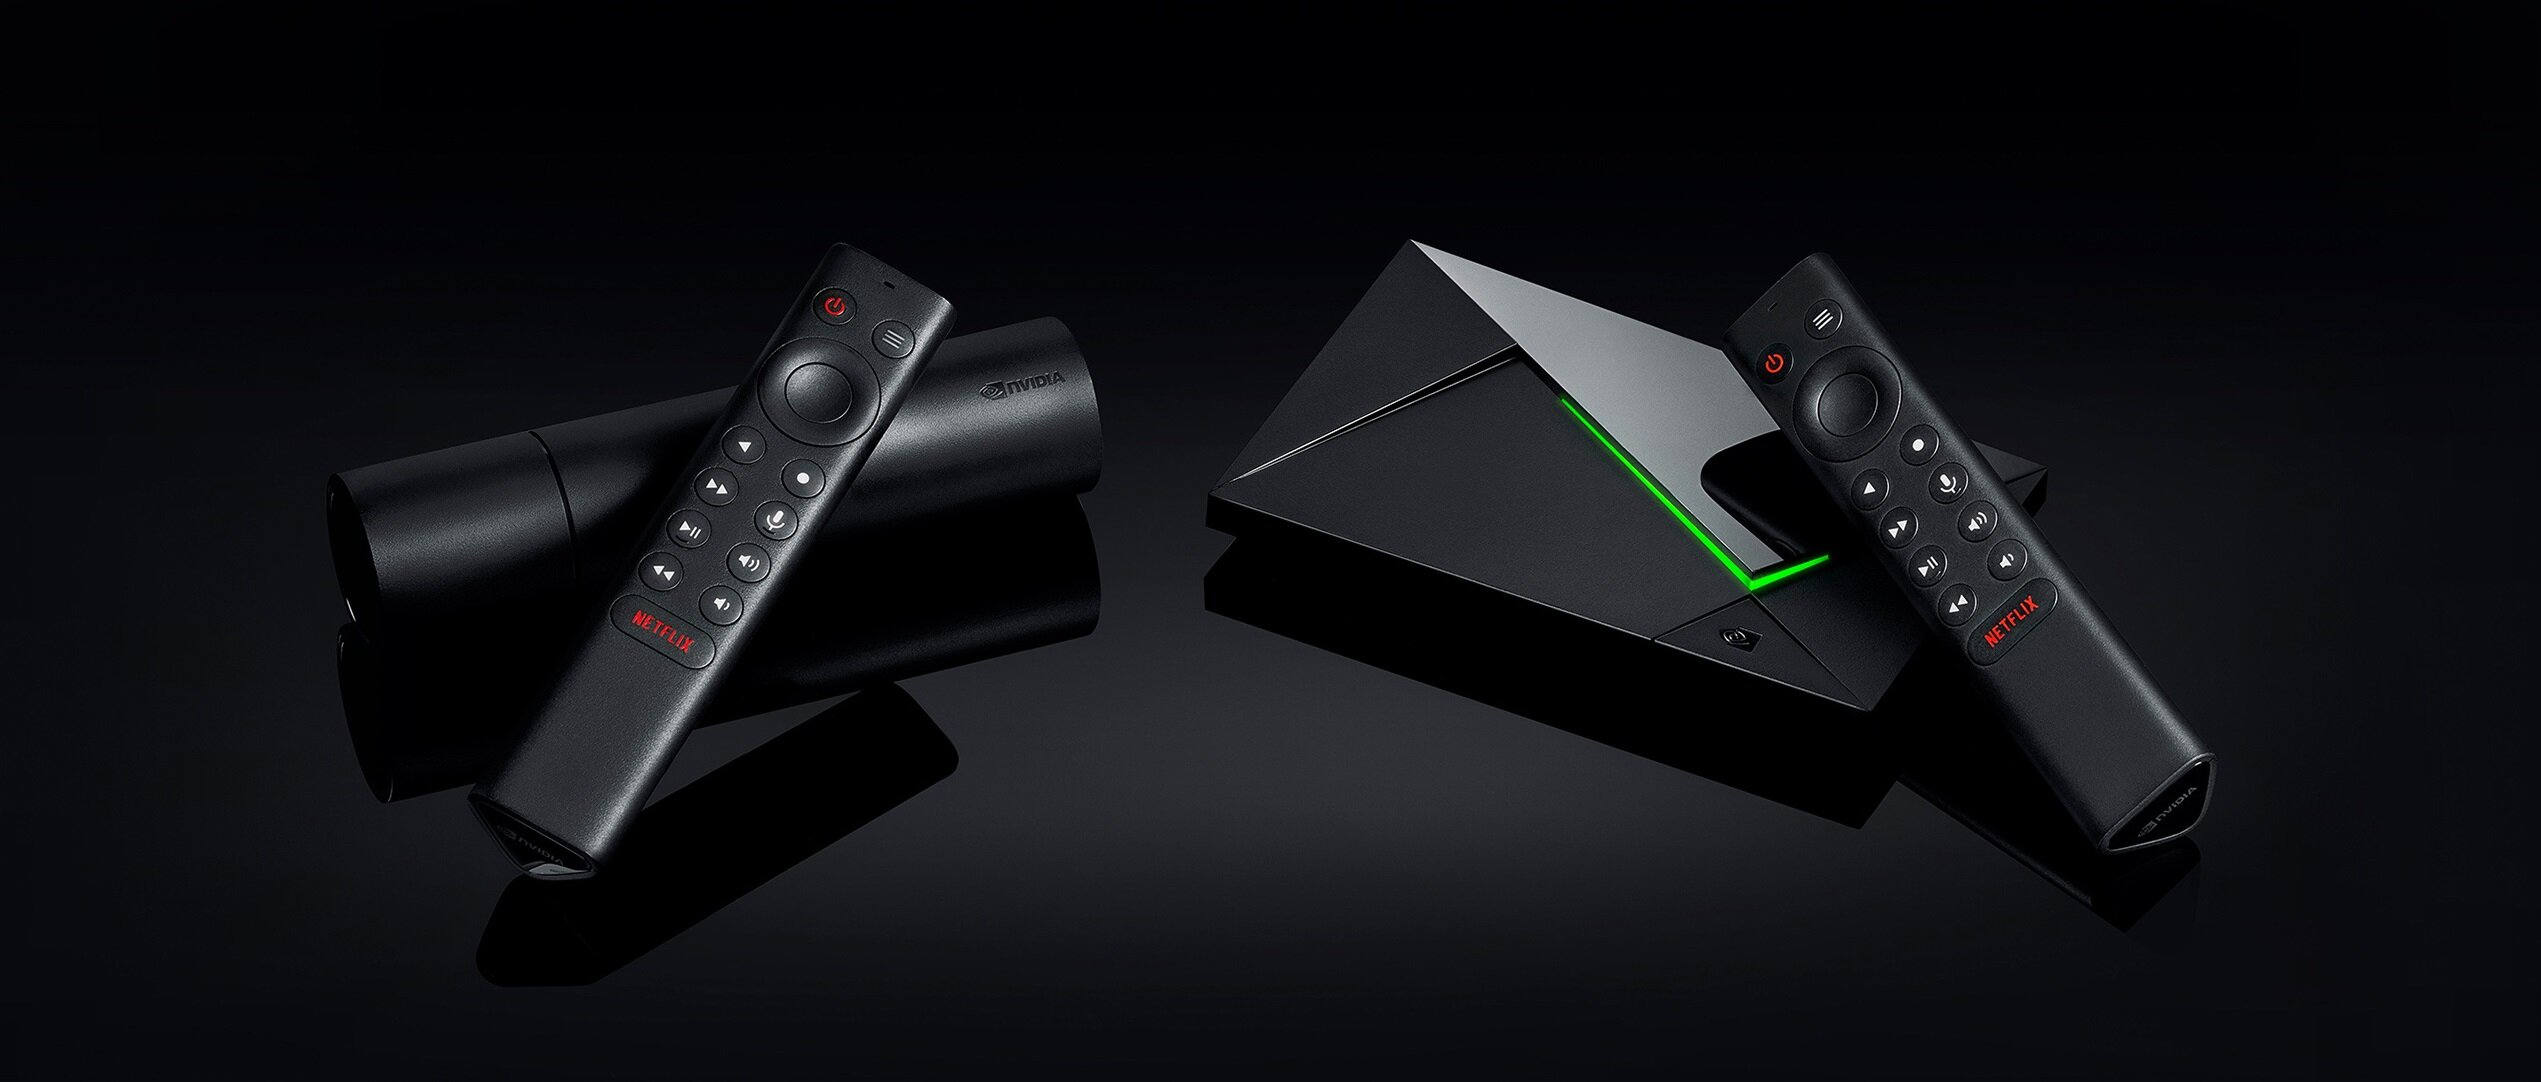 Η Nvidia ανακοίνωσε νέα μοντέλα Shield TV και Shield TV Pro